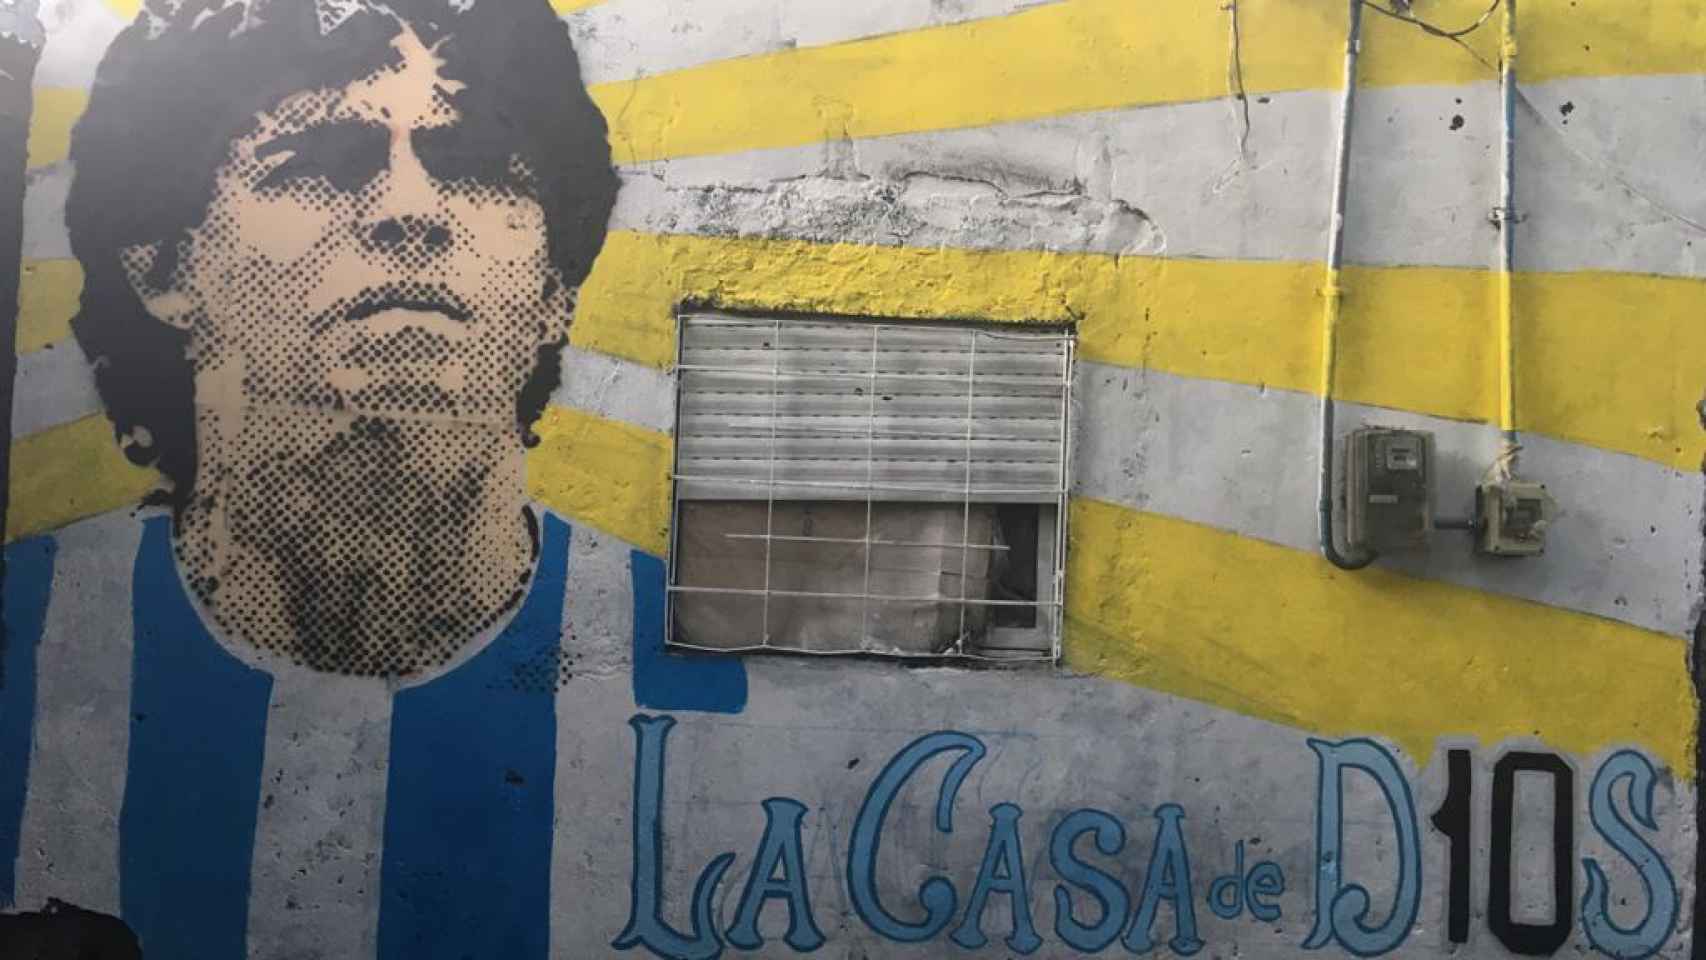 Mural de Maradona